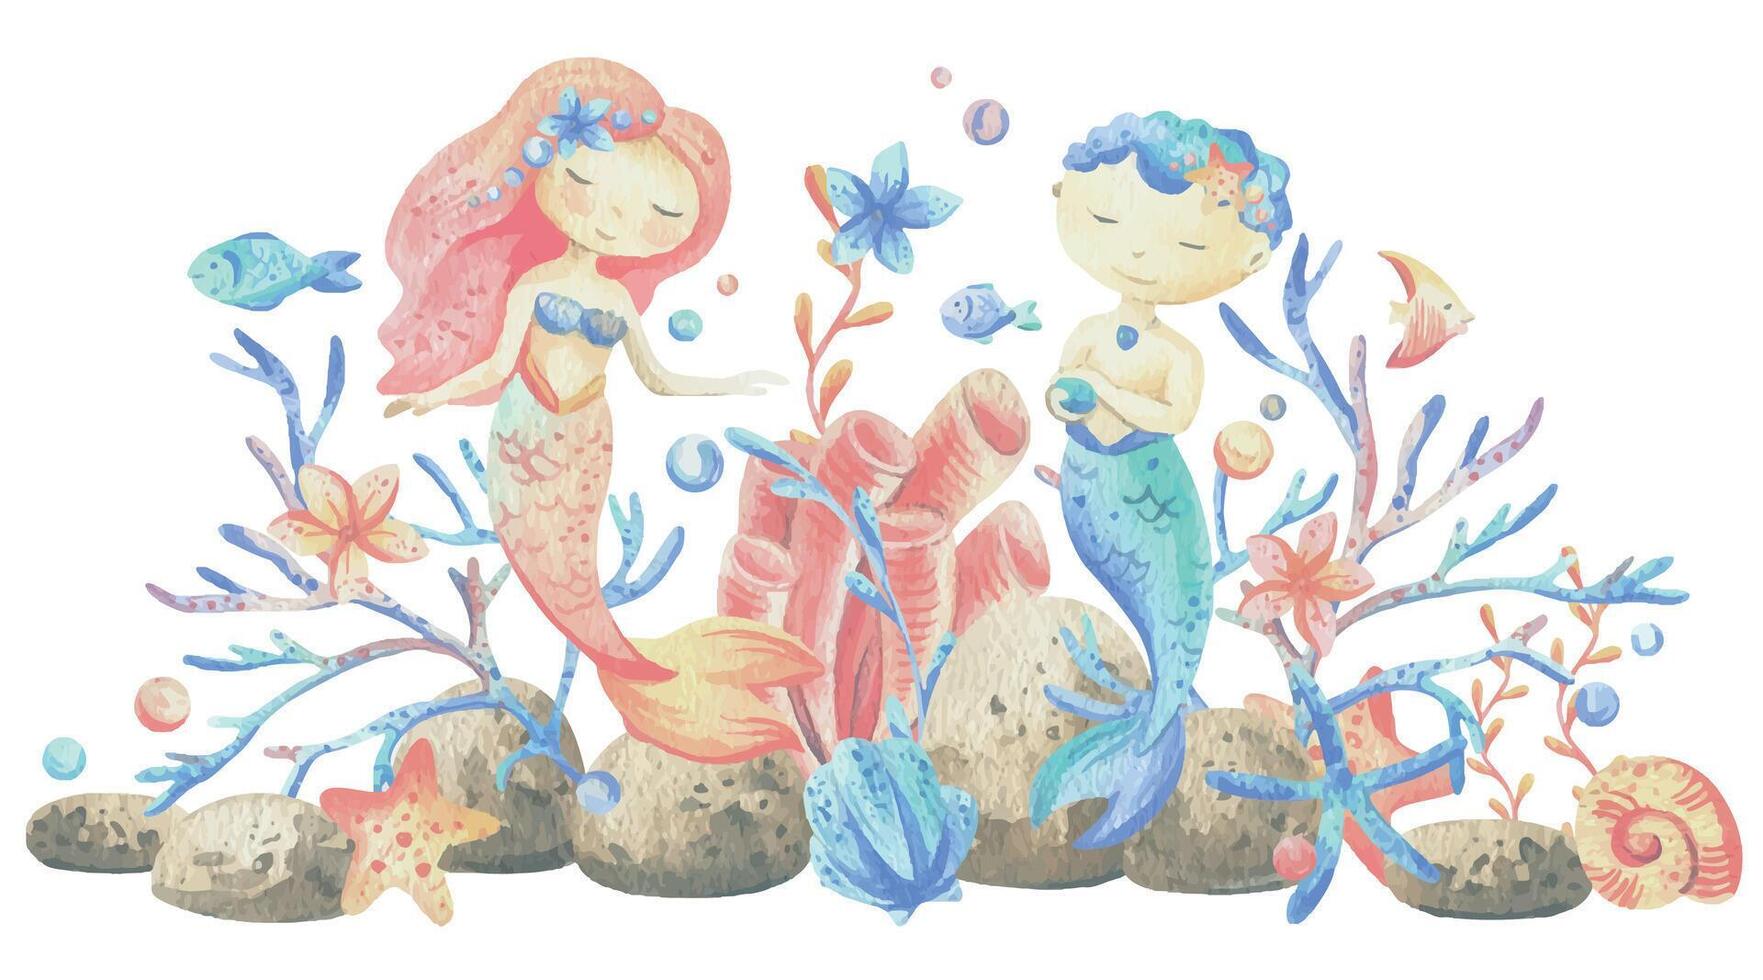 Meerjungfrau wenig Junge und Mädchen mit Meer Korallen, Algen, Muscheln, Seestern, Fisch, Blasen. Aquarell Illustration Hand gezeichnet im Koralle, Türkis und Blau Farben. Komposition isoliert von das Hintergrund. vektor